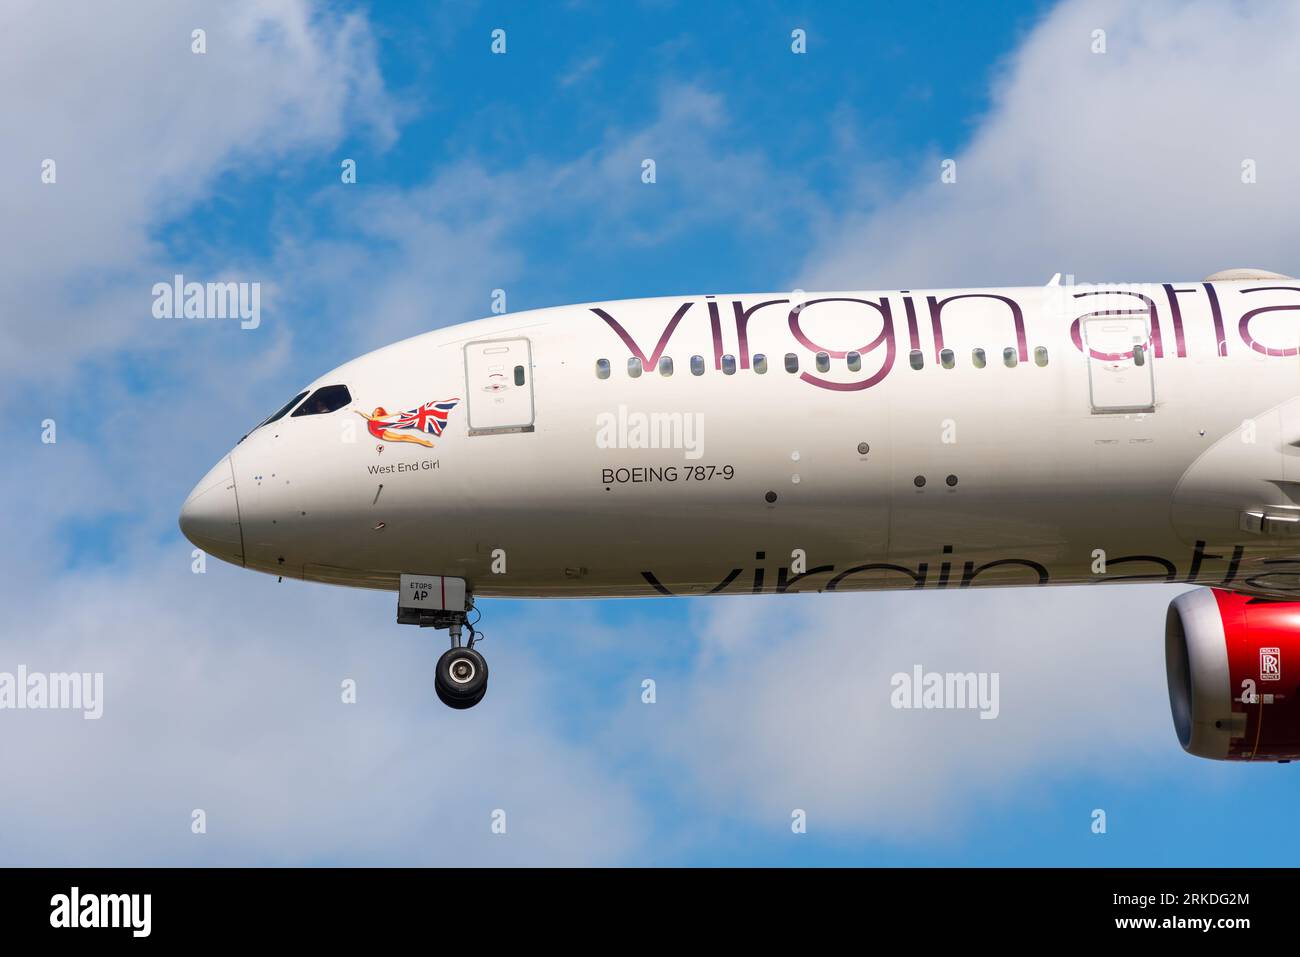 Virgin Atlantic Boeing 787-9 Dreamliner jet Airliner en finale à atterrir, aéroport de Londres Heathrow, Royaume-Uni. Nommée West End Girl. Art du nez de la dame écarlate Banque D'Images